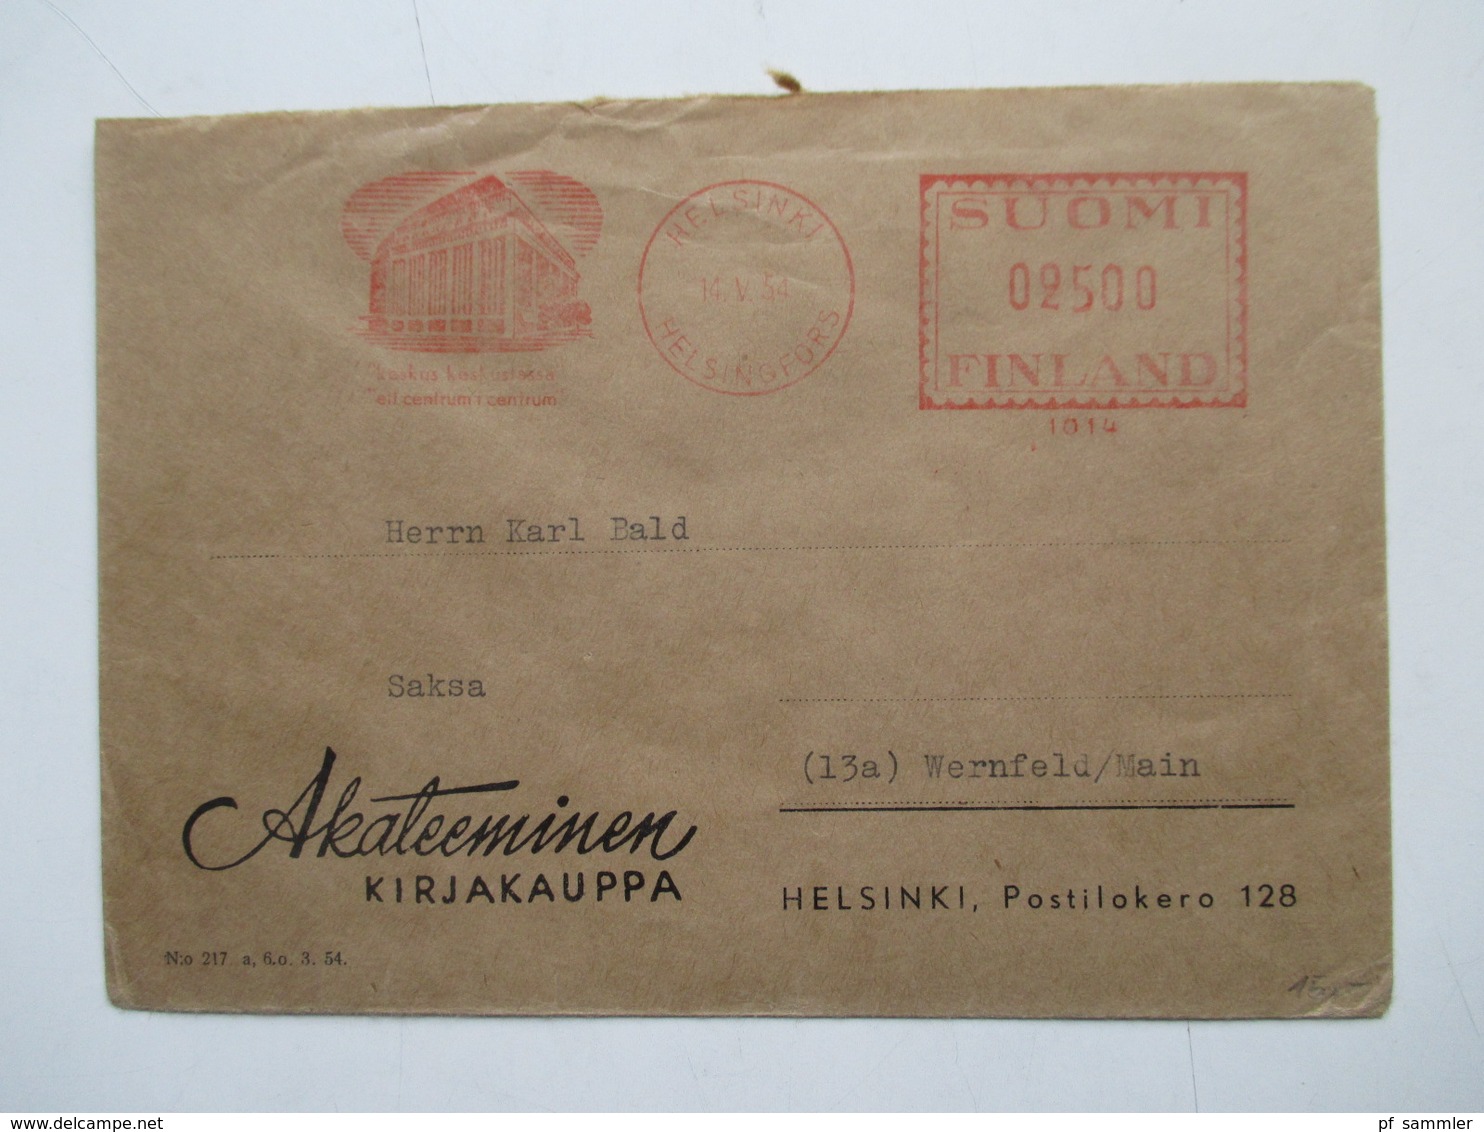 Finnland 1954 - 72 Luftpost Briefe 12 Stk. Firmen Korrespondenz alles Freistempel Helsinki interessanter Posten!